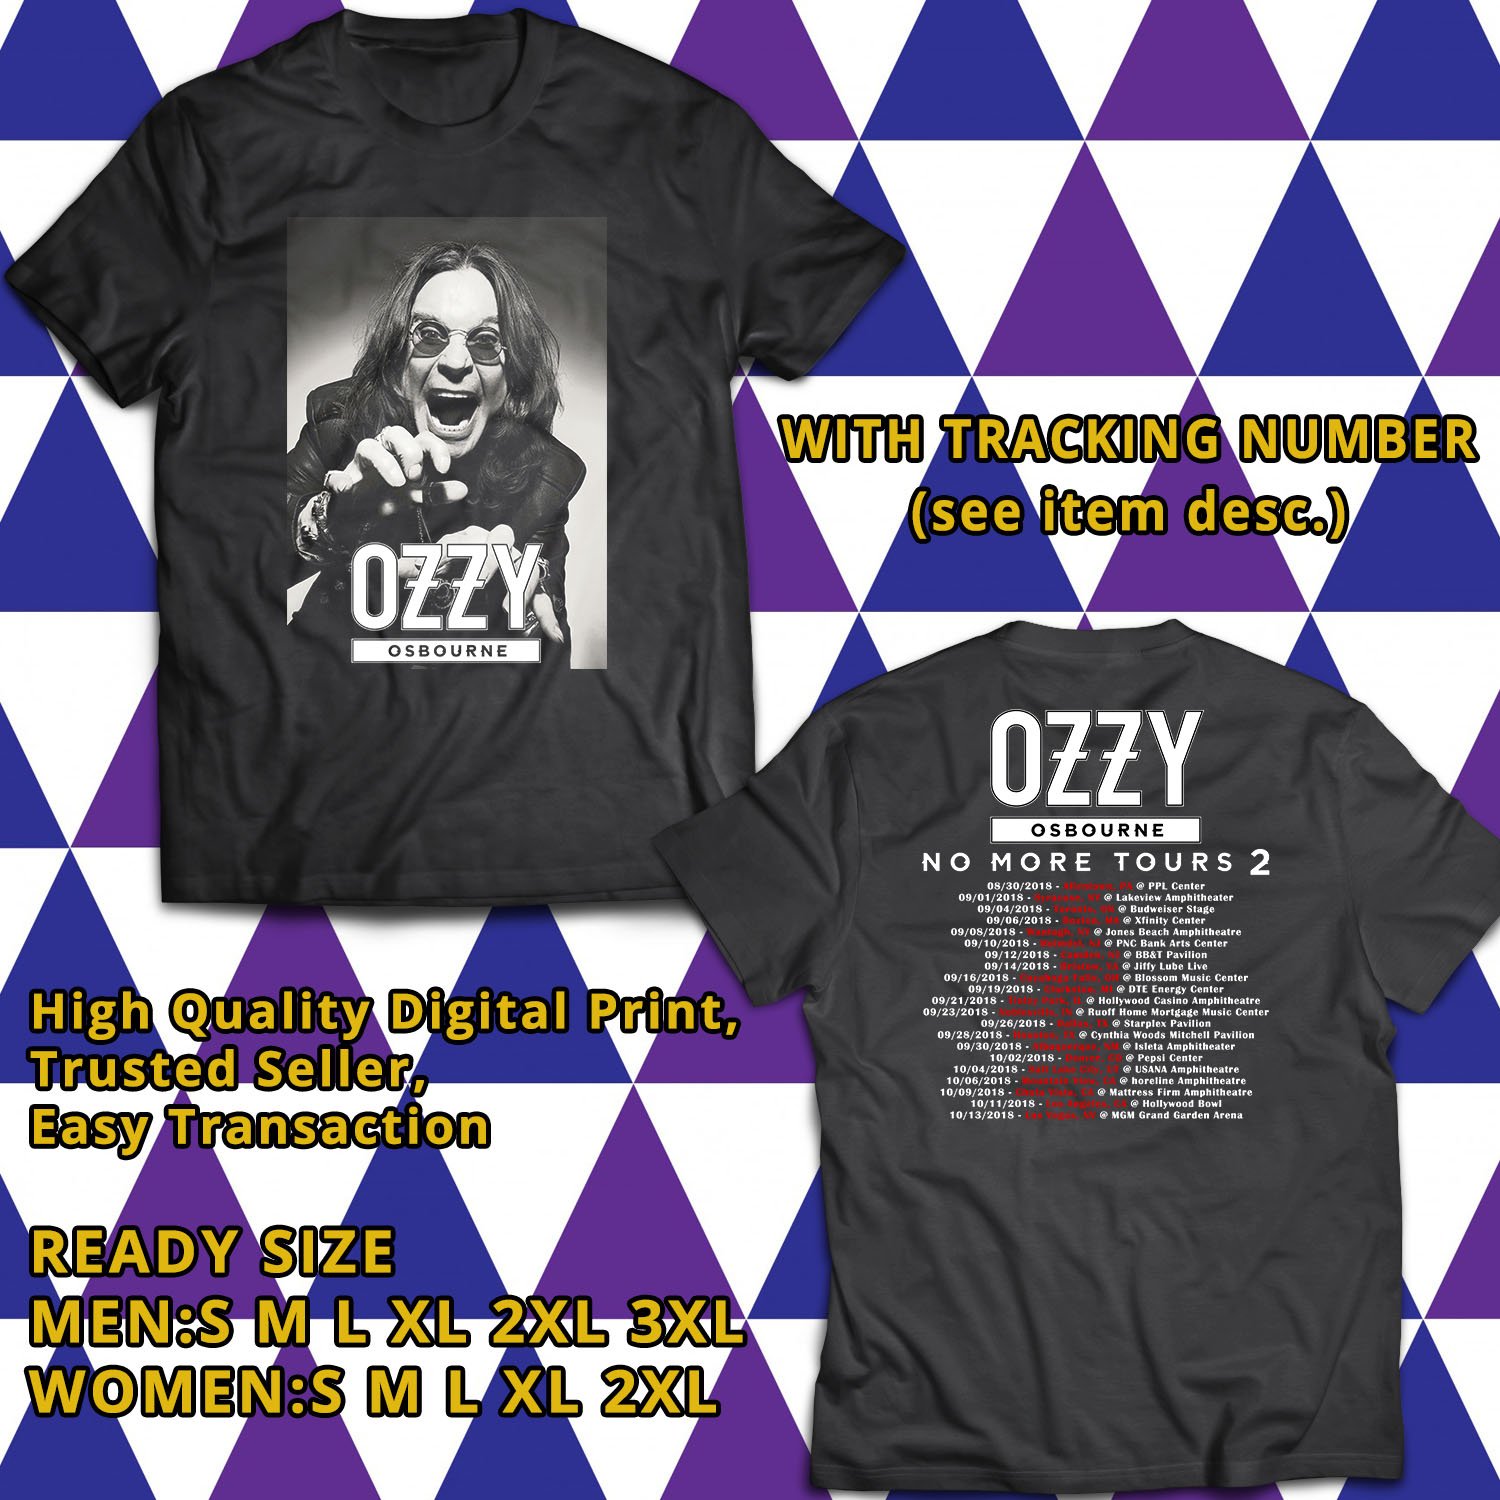 POPULAR TOUR 2018 OZZY OSBOURNE NO MORE TOURS 2 2SIDE BLACK TEE TIWI99 21500 x 1500